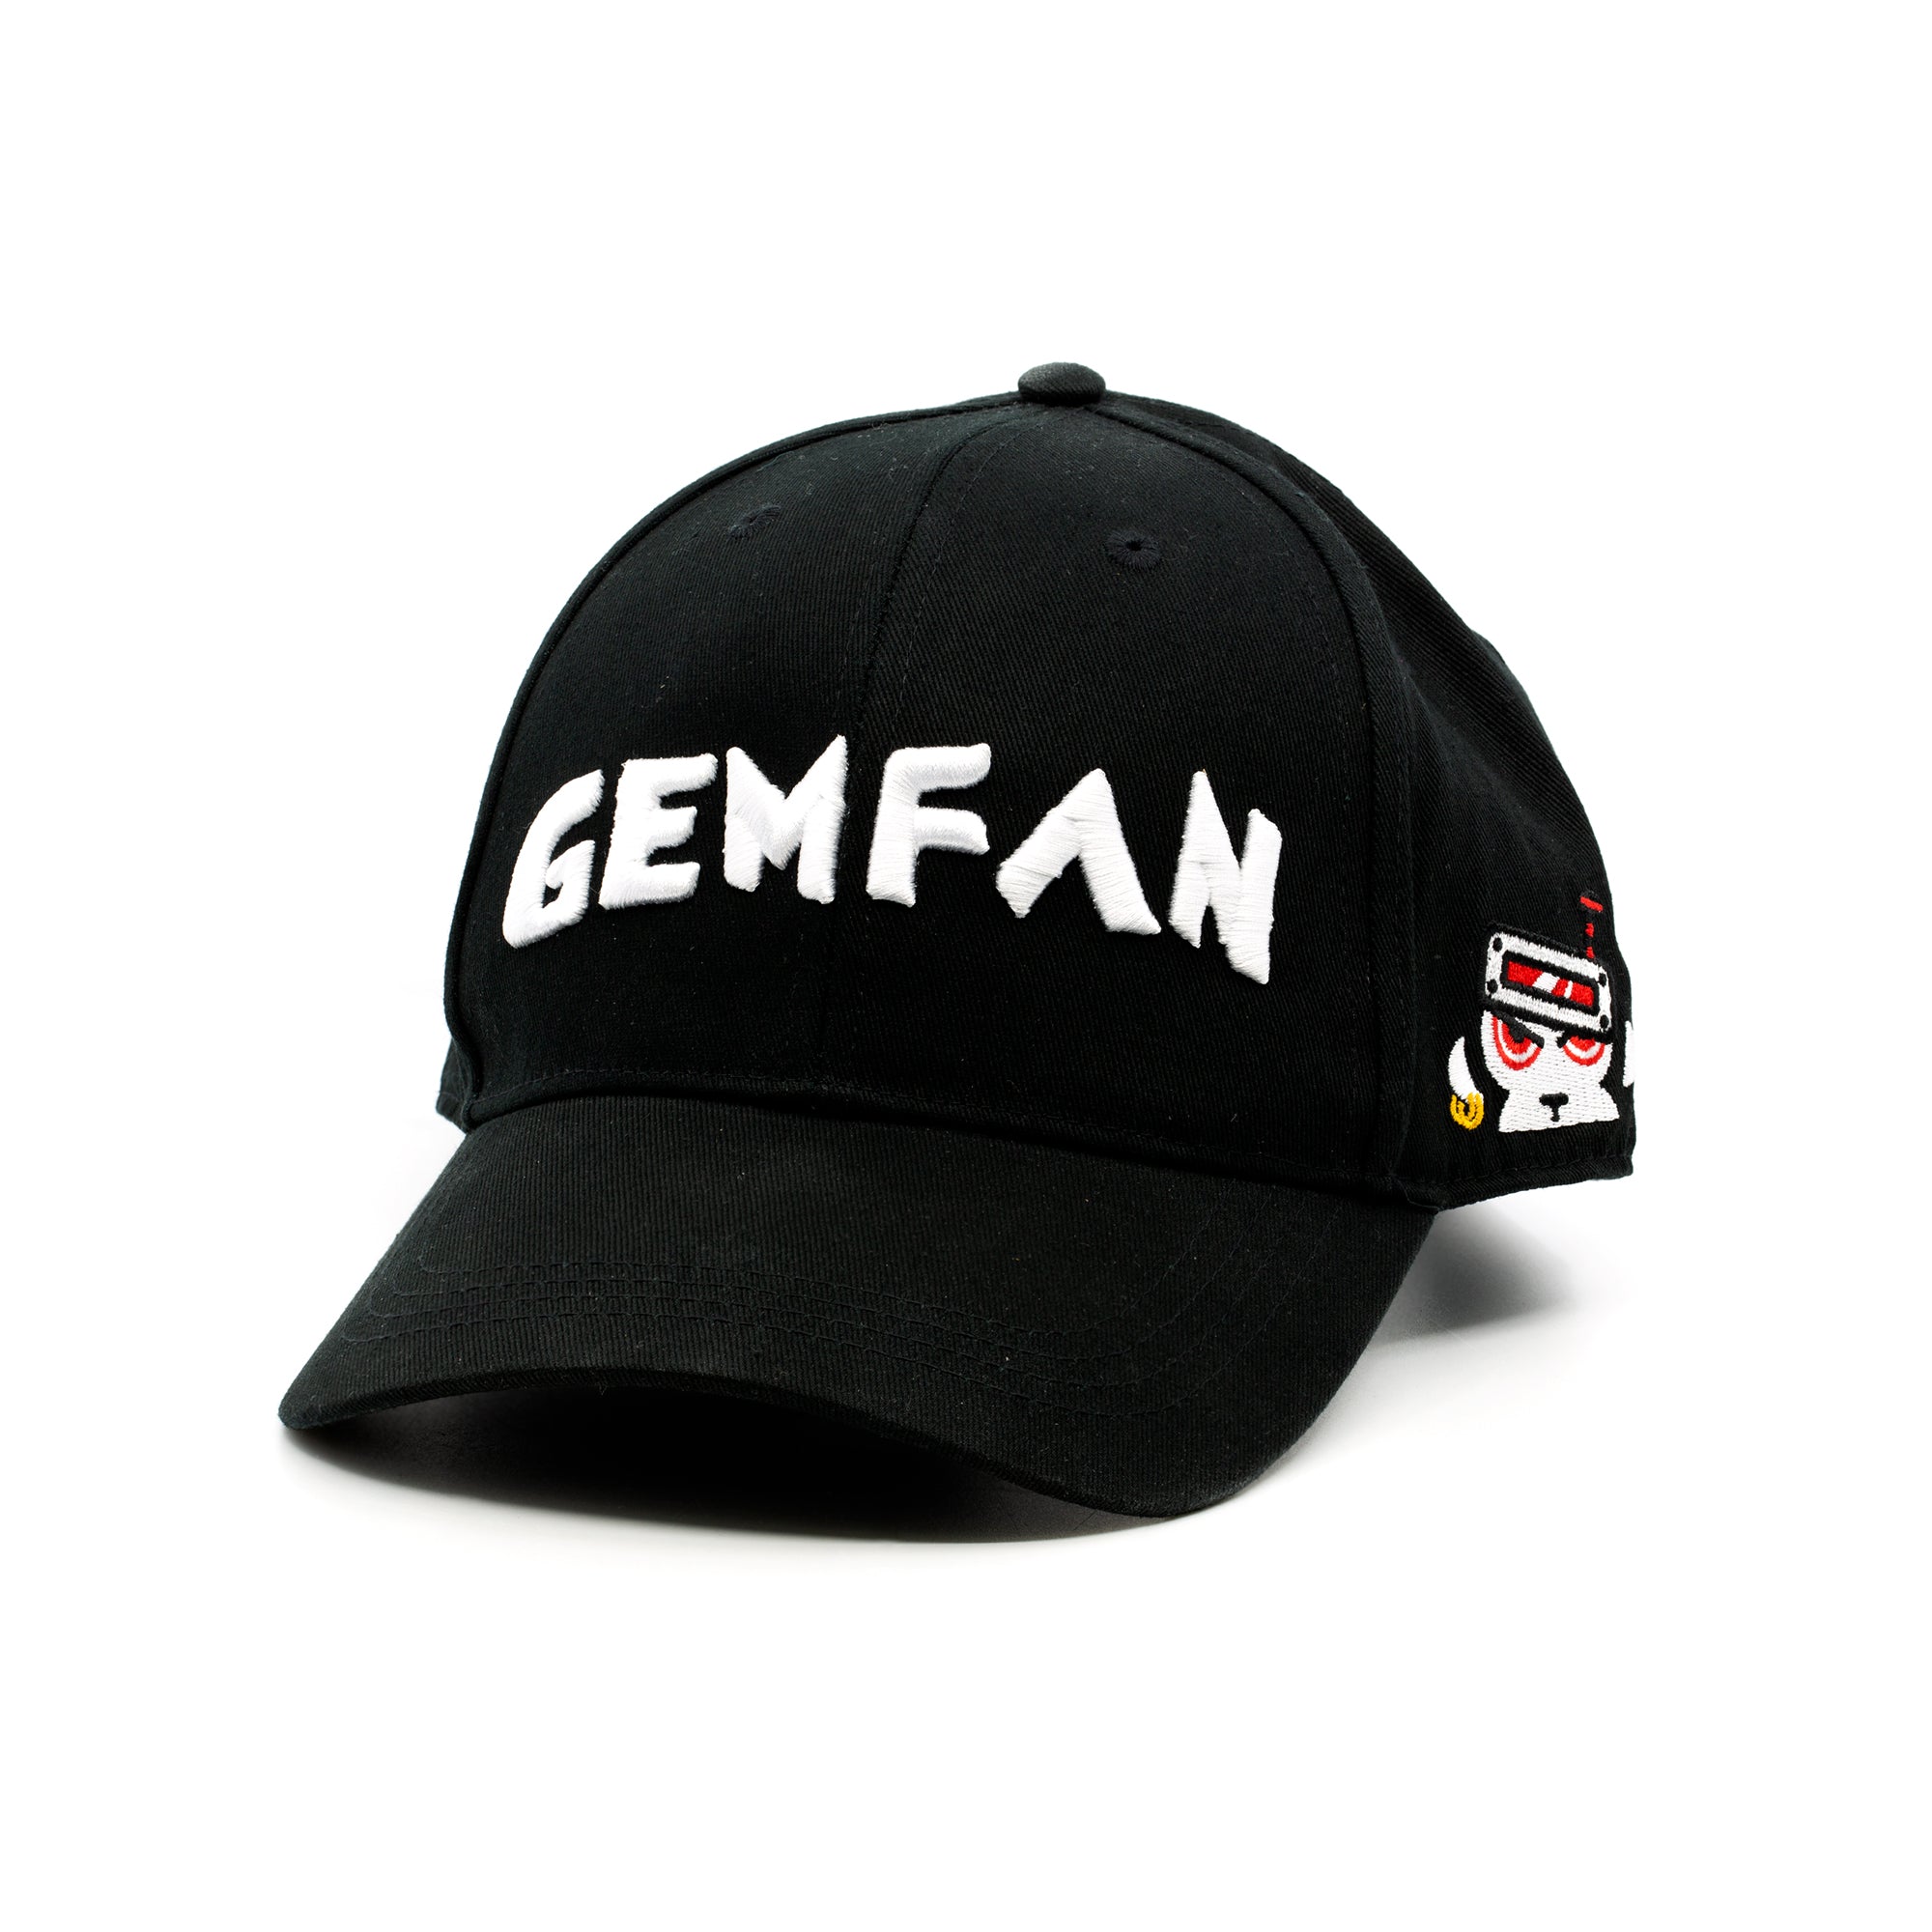 Gemfan Monkey Baseball Cap